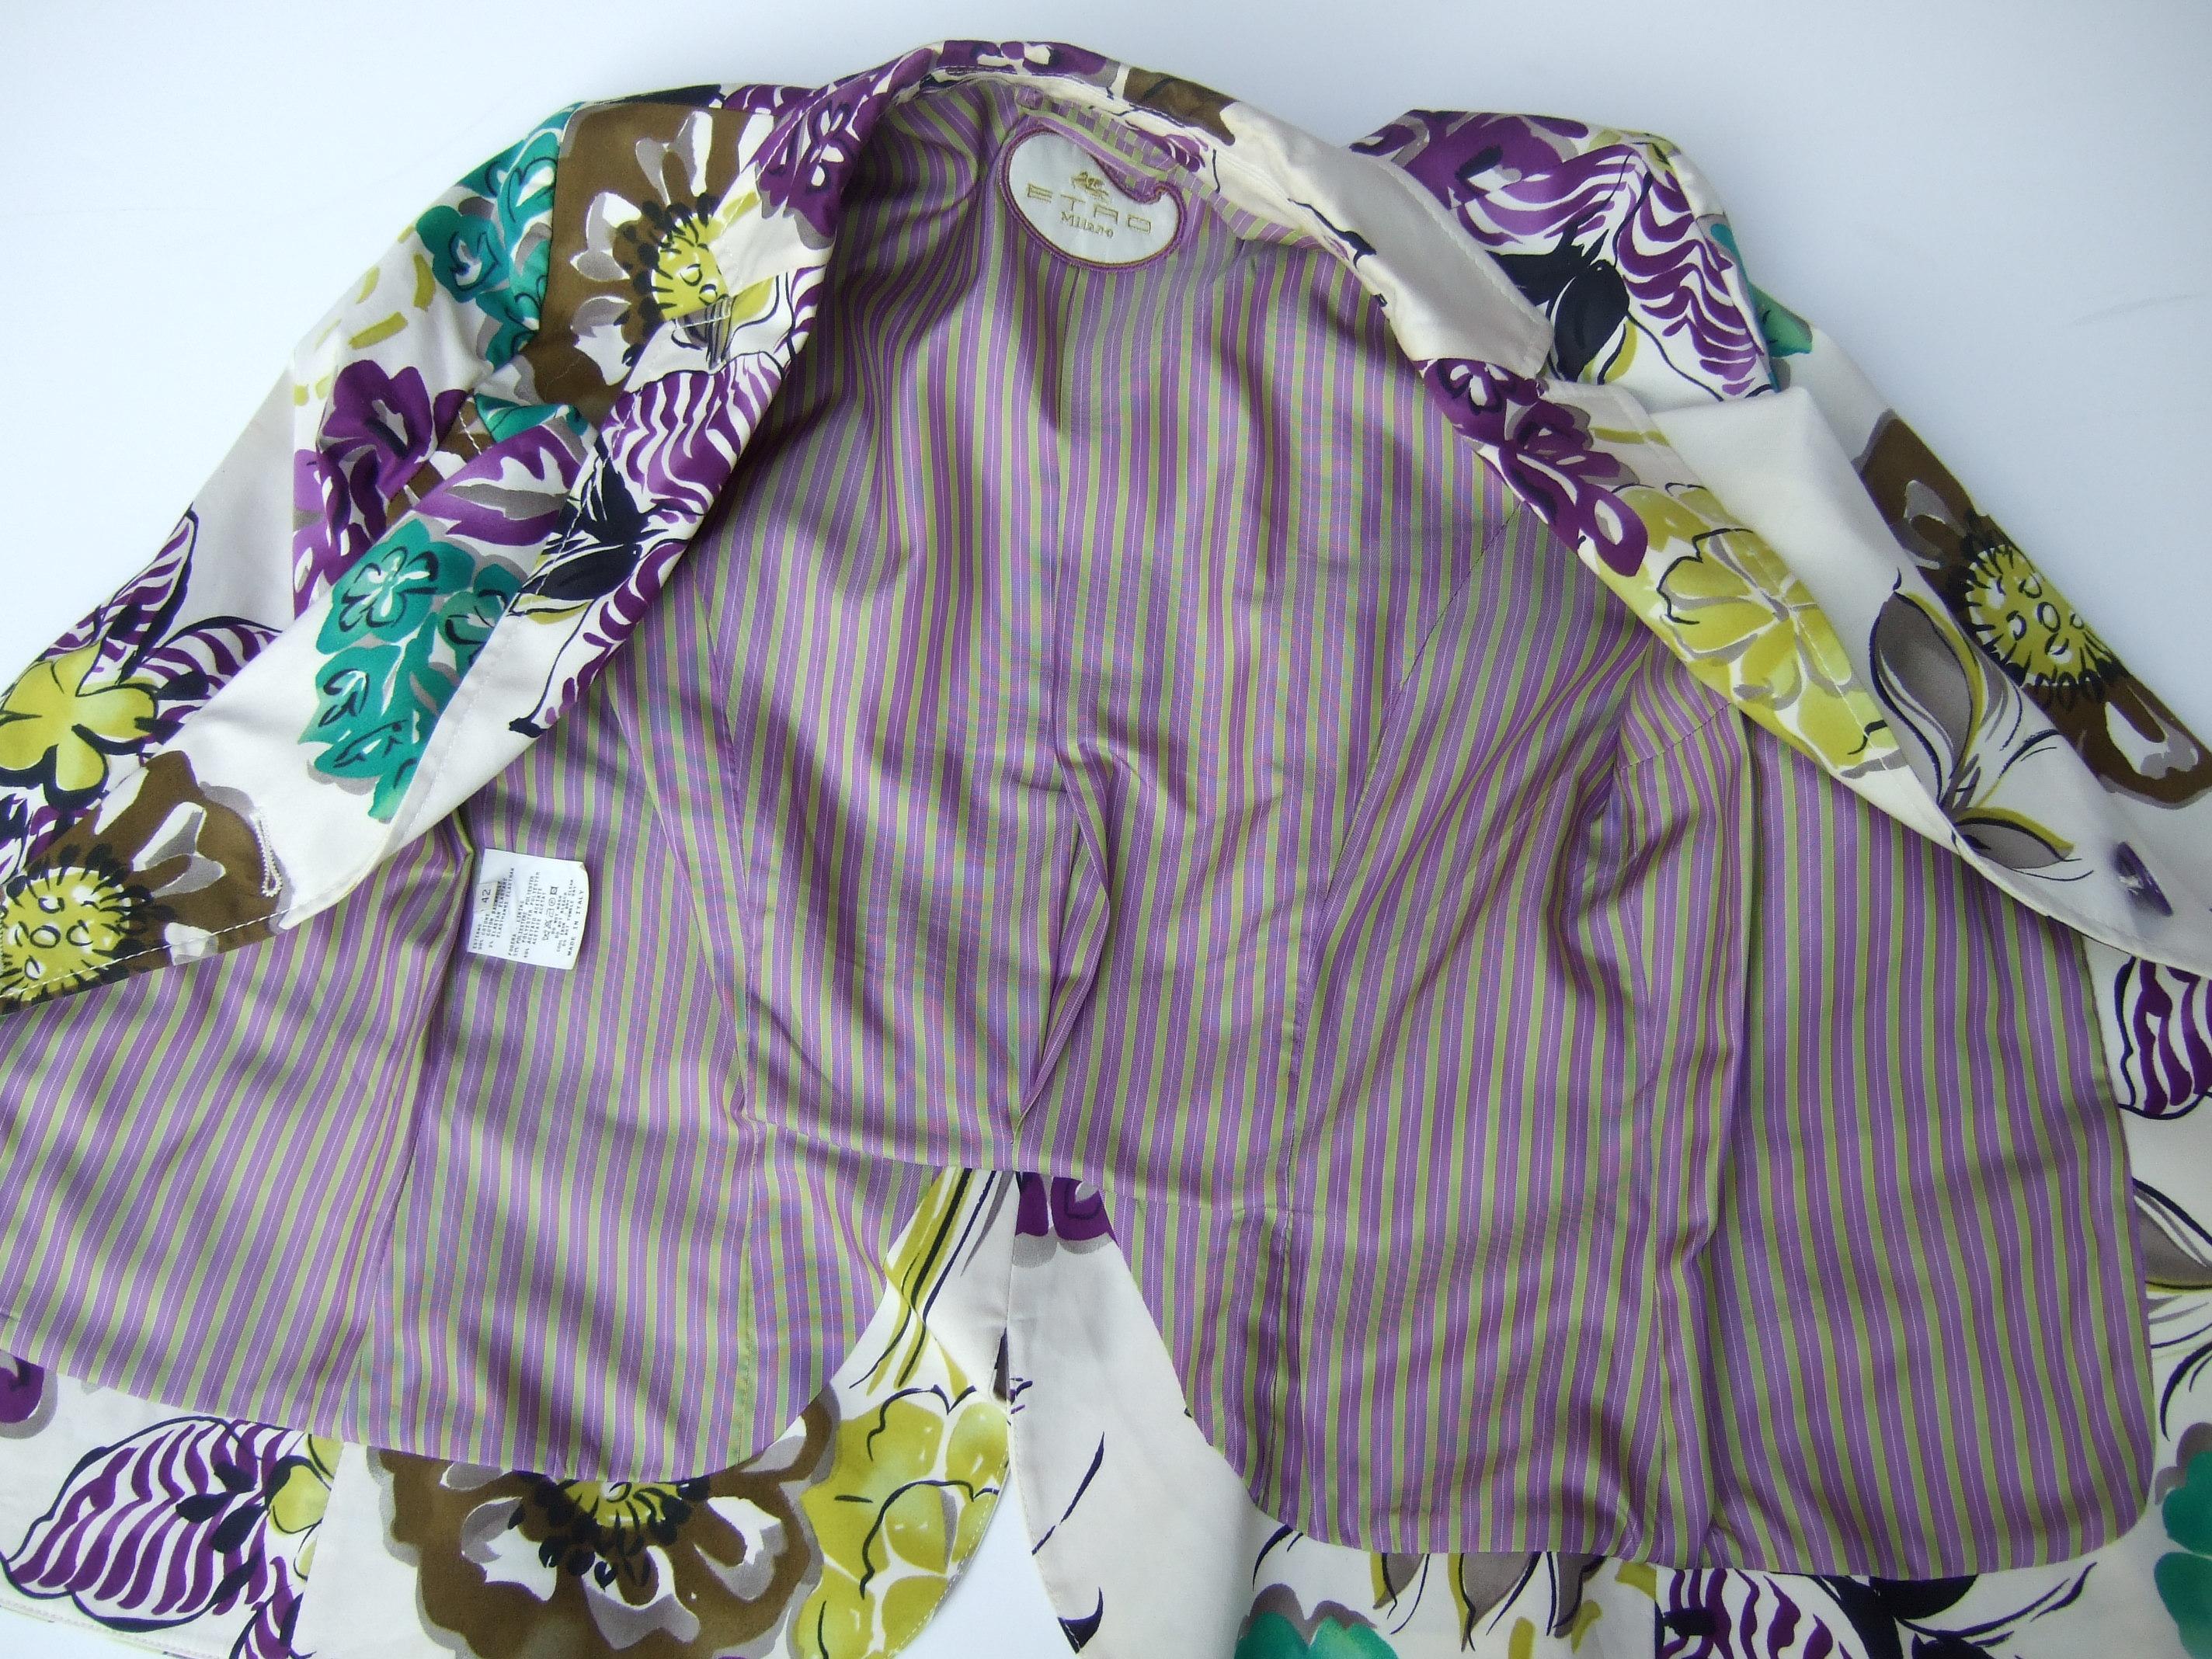 Etro Milano Crisp Vibrant Floral Print Cotton Jacket Size 42  21st c  For Sale 9